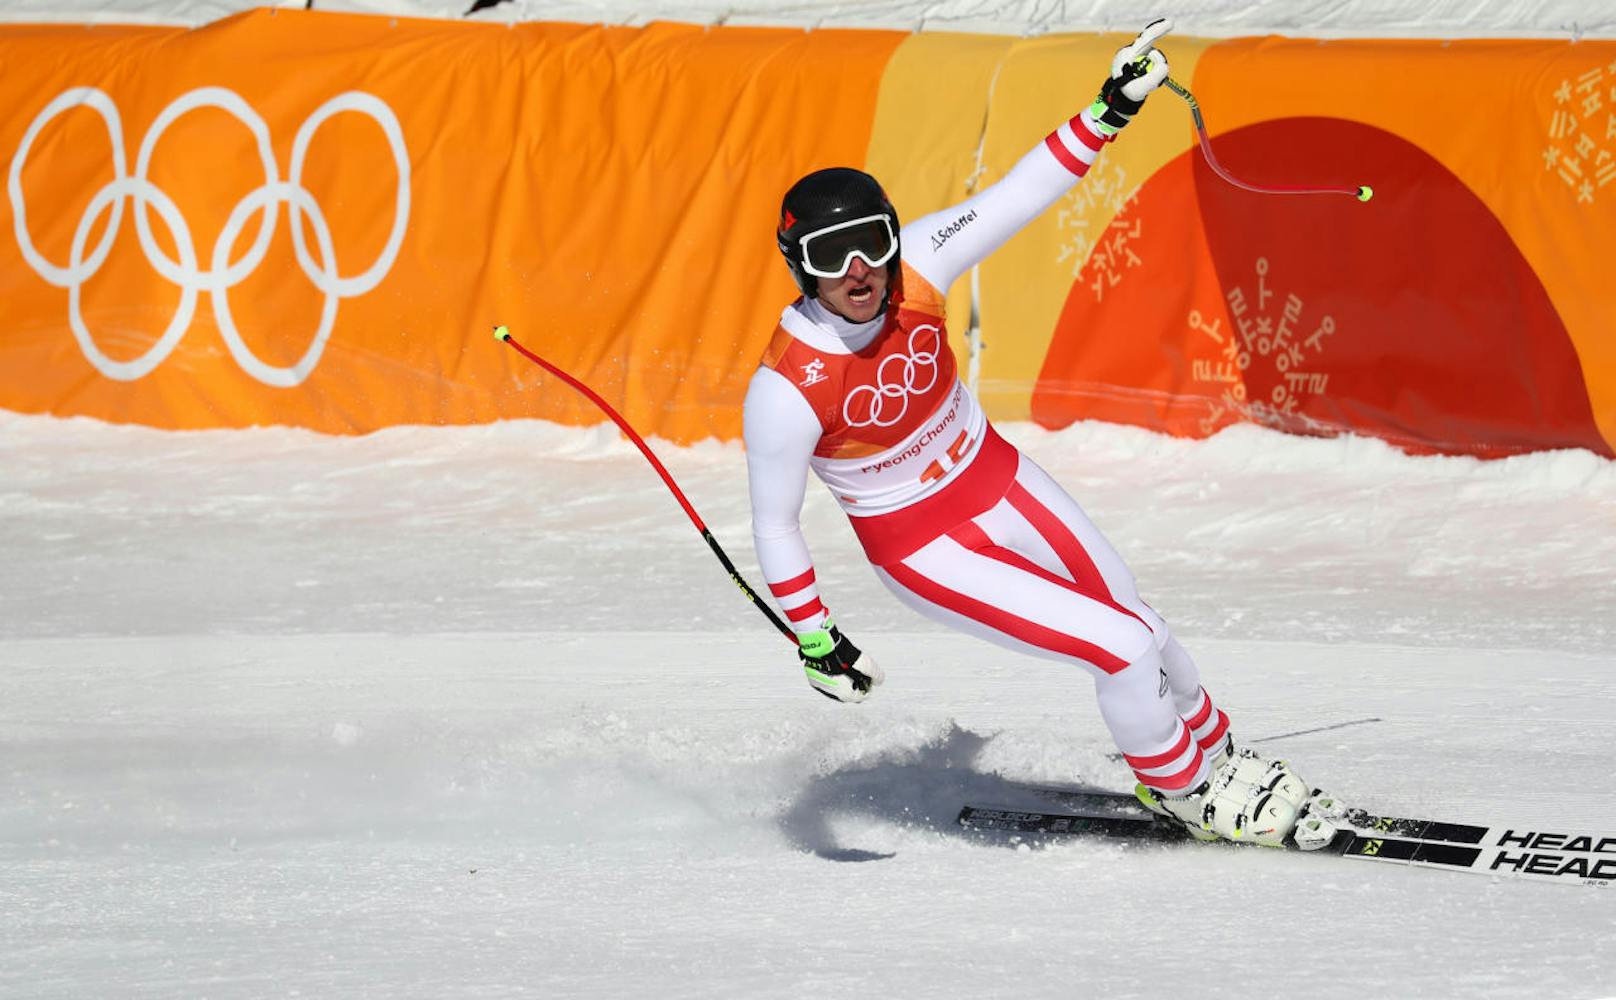 Der Abfahrts-Olympiasieger 2014 setzte in Pyeongchang noch einen drauf. Drei Tage nach dem Sturz im Kombi-Slalom fuhr Mayer zu Gold im Super-G.